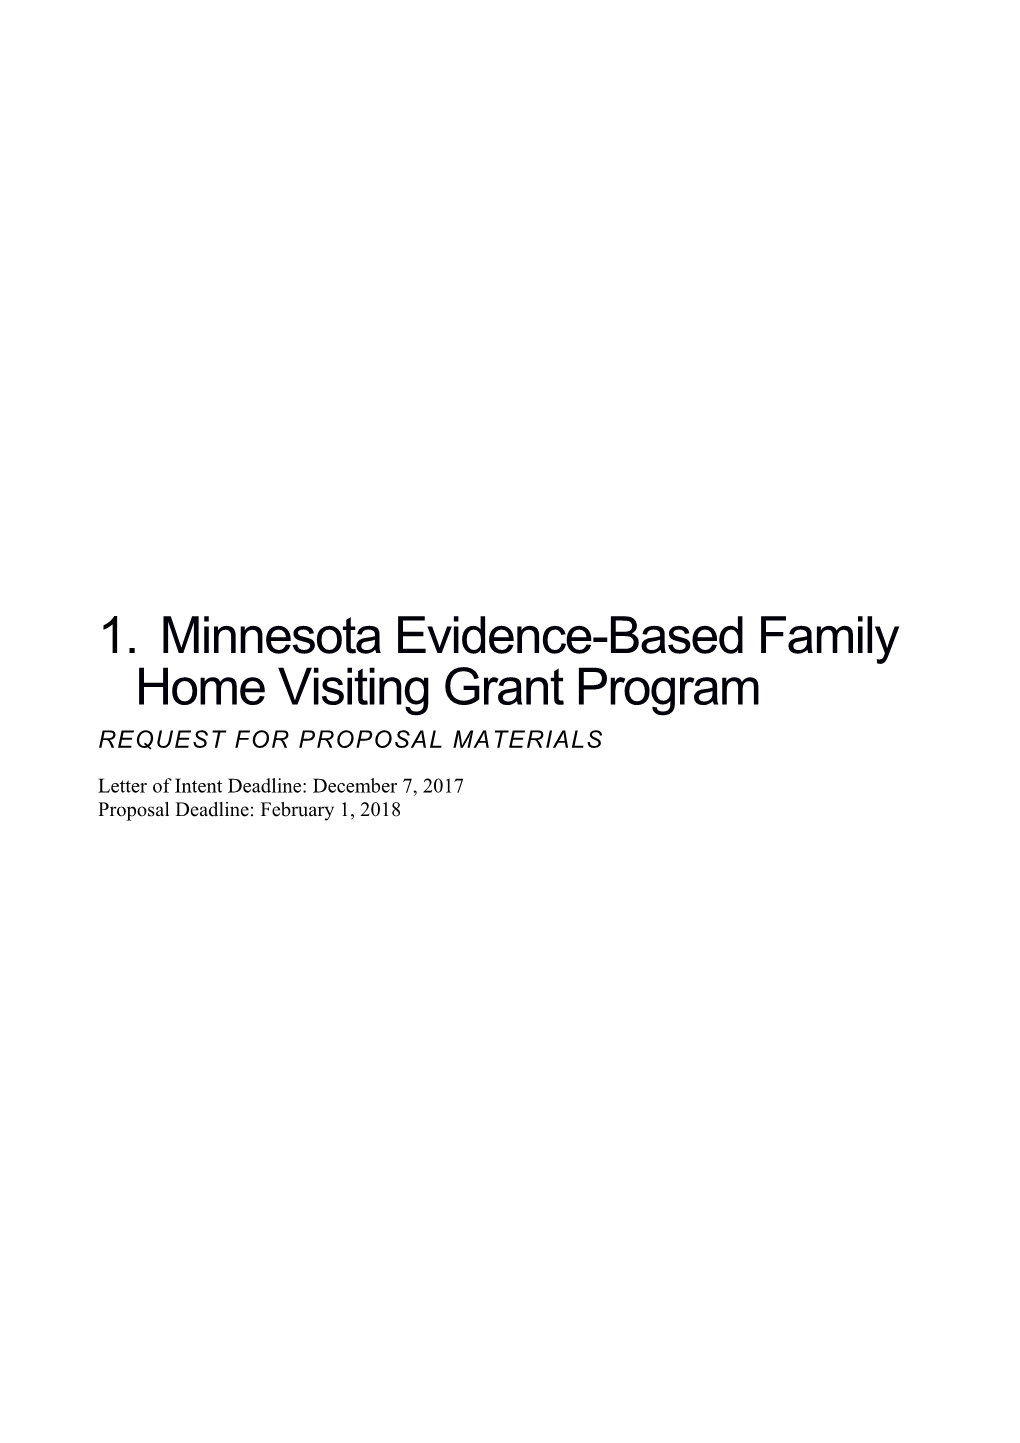 Minnesota Evidence-Based Family Home Visiting Grant Program